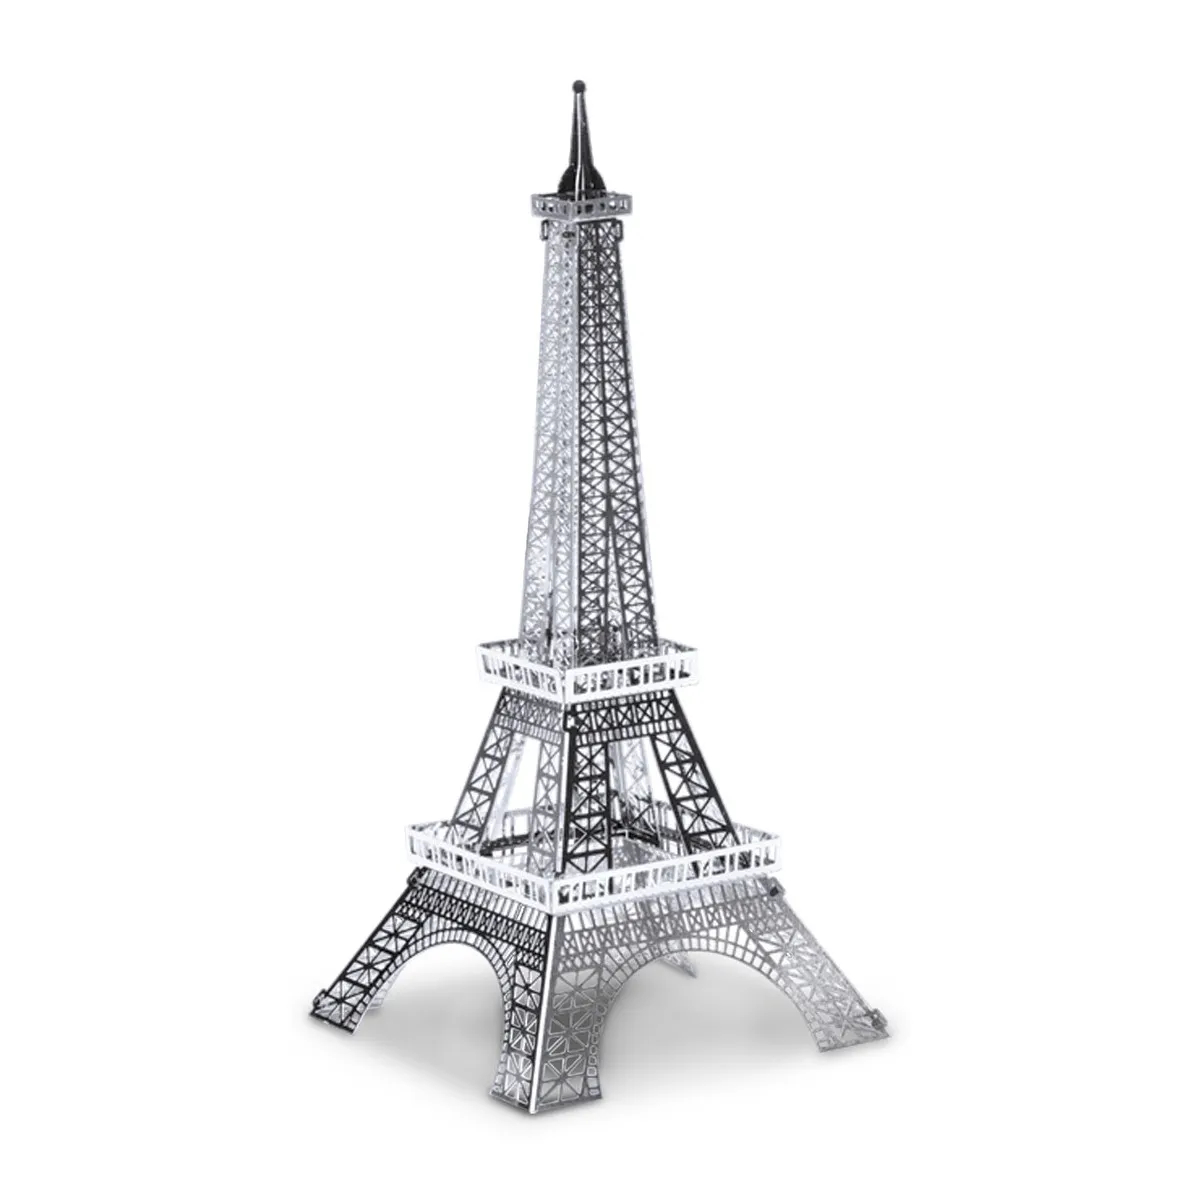 3D Metallbausatz berühmte Gebäude - Eiffelturm